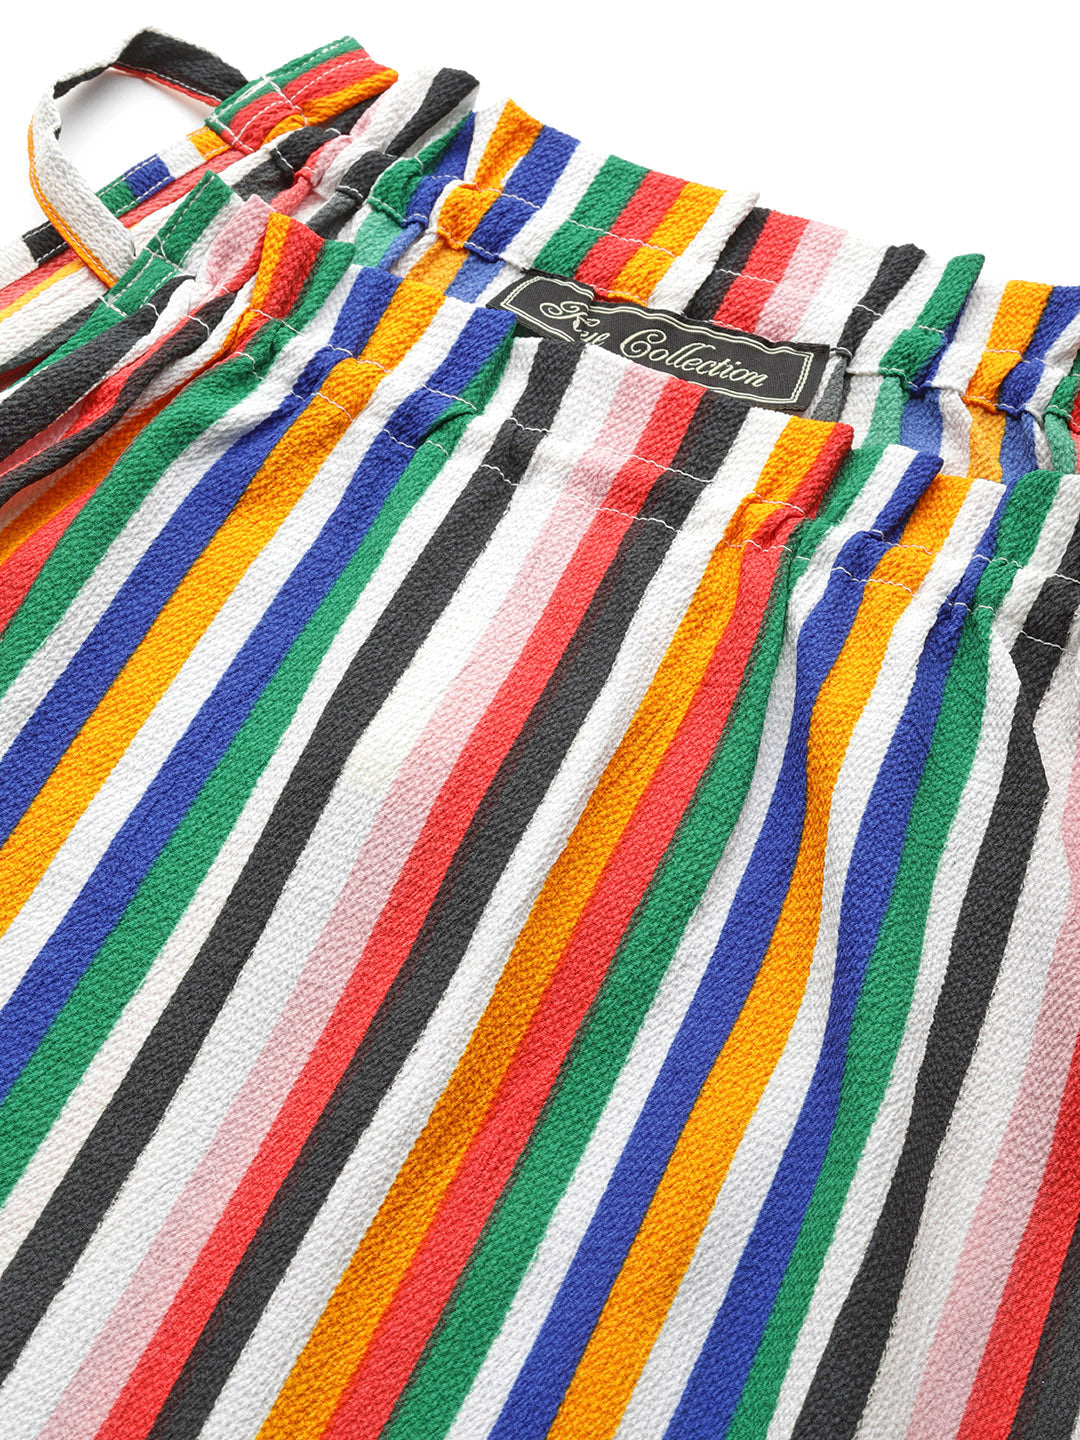 Multicoloured Striped Maxi Dress